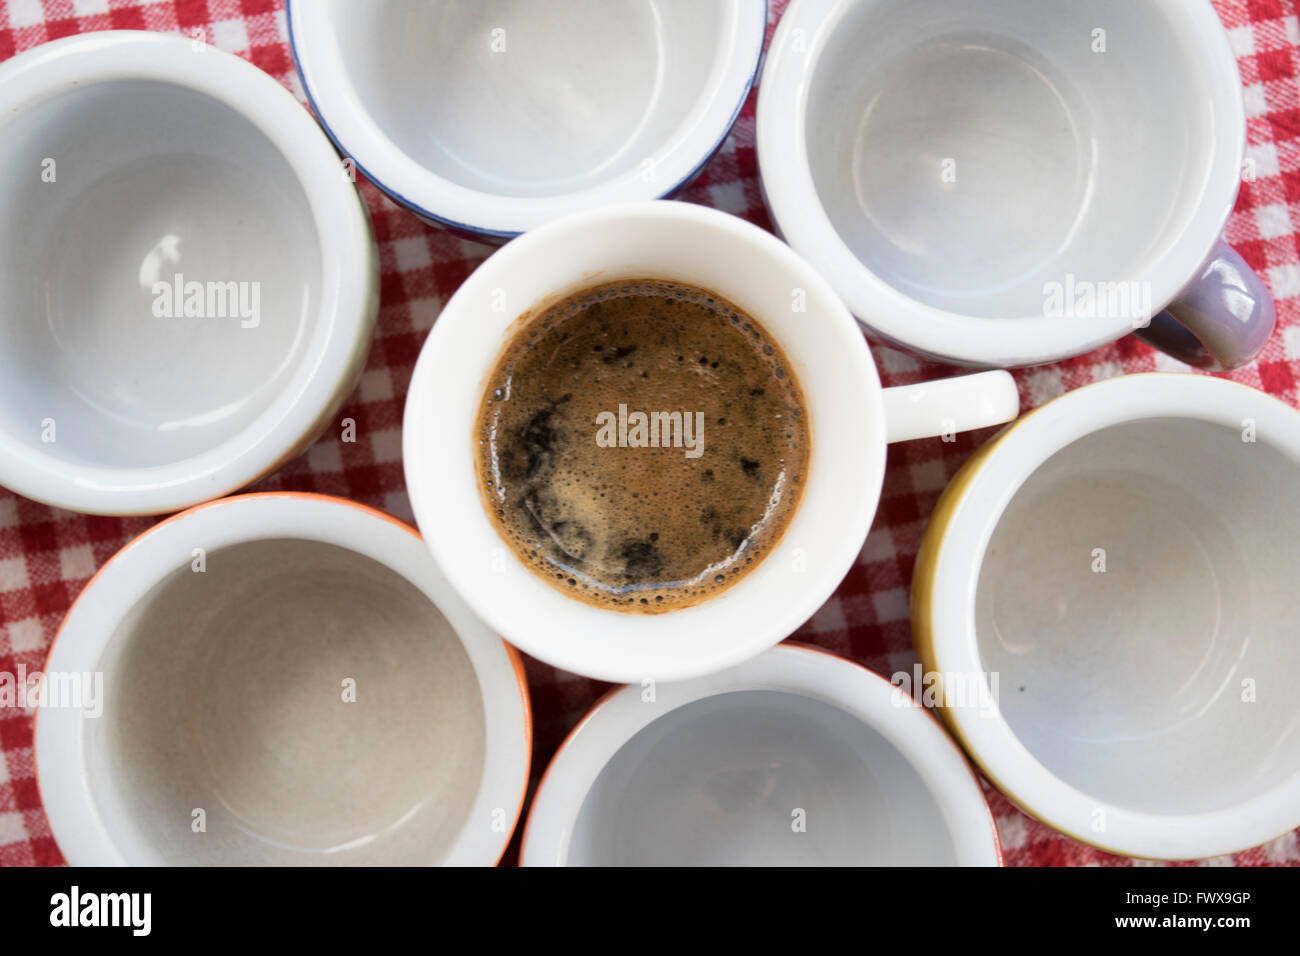 Elegantes tazas de café negro sobre una superficie oscura fotos de archivo